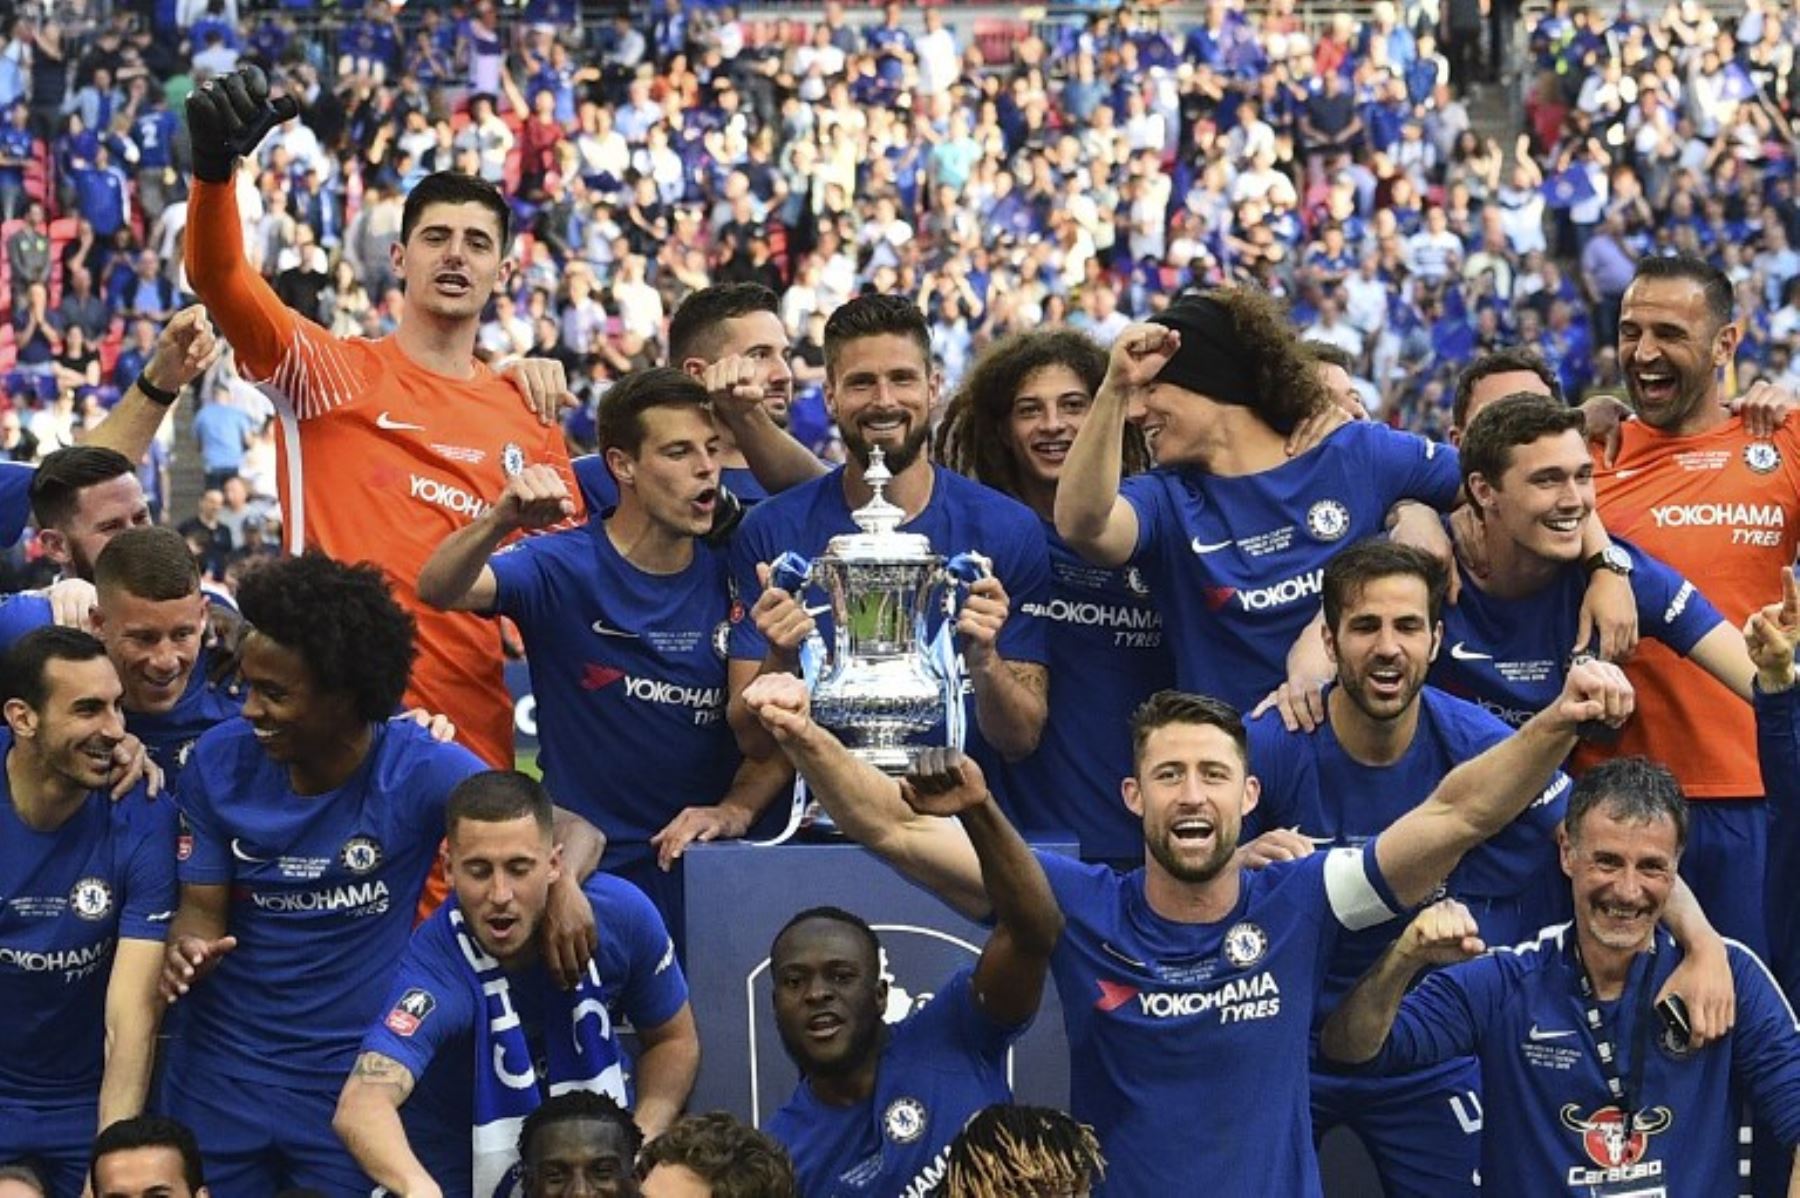 Los jugadores del Chelsea celebran con el trofeo después de su victoria en el partido de fútbol final FA Cup.Foto:AFP